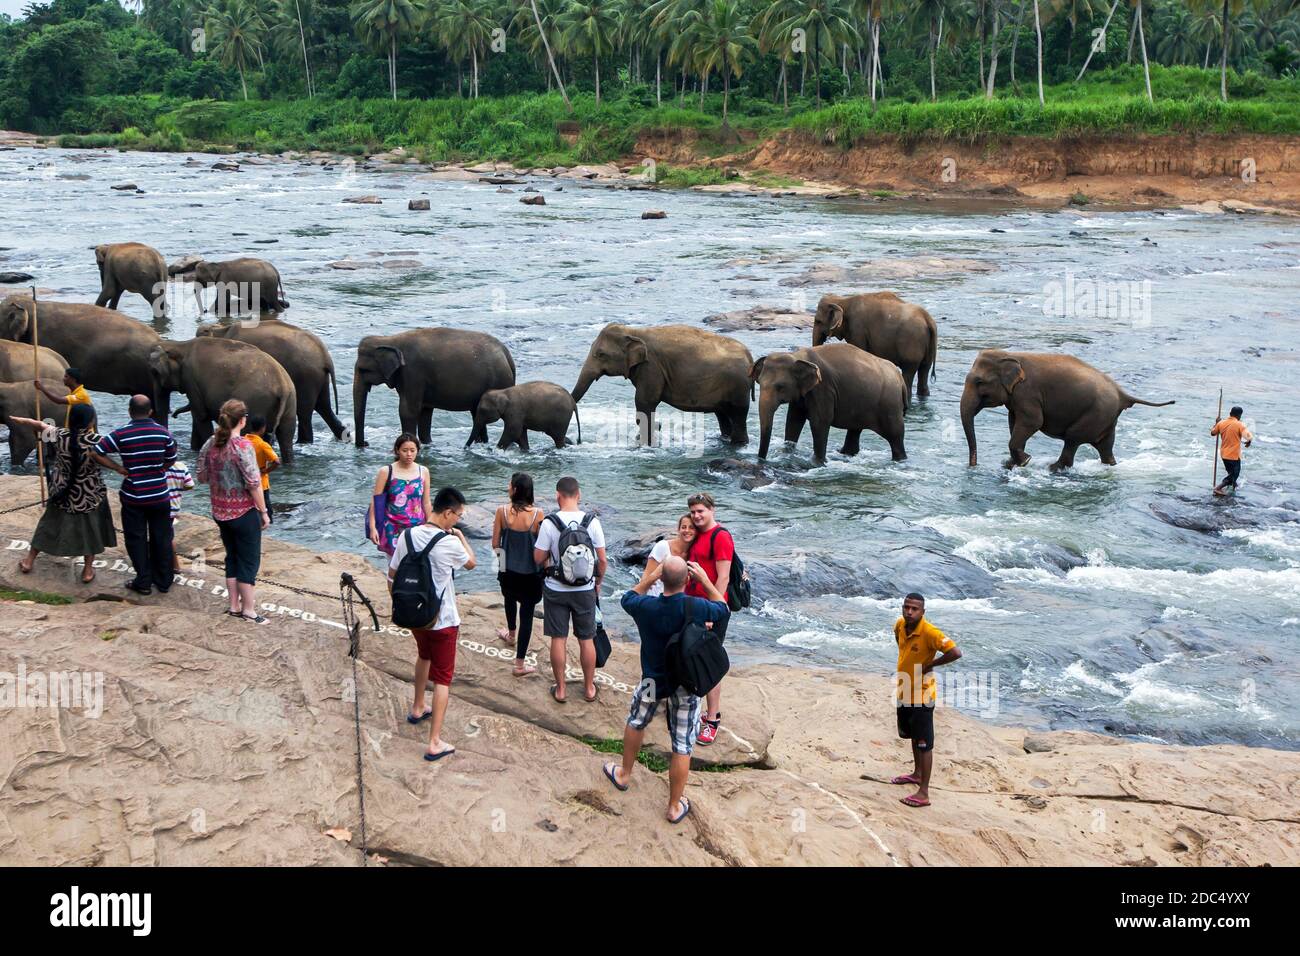 Elephants from the Pinnawala Elephant Orphanage bathe in the Maha Oya River at Pinnawala in central Sri Lanka. Stock Photo